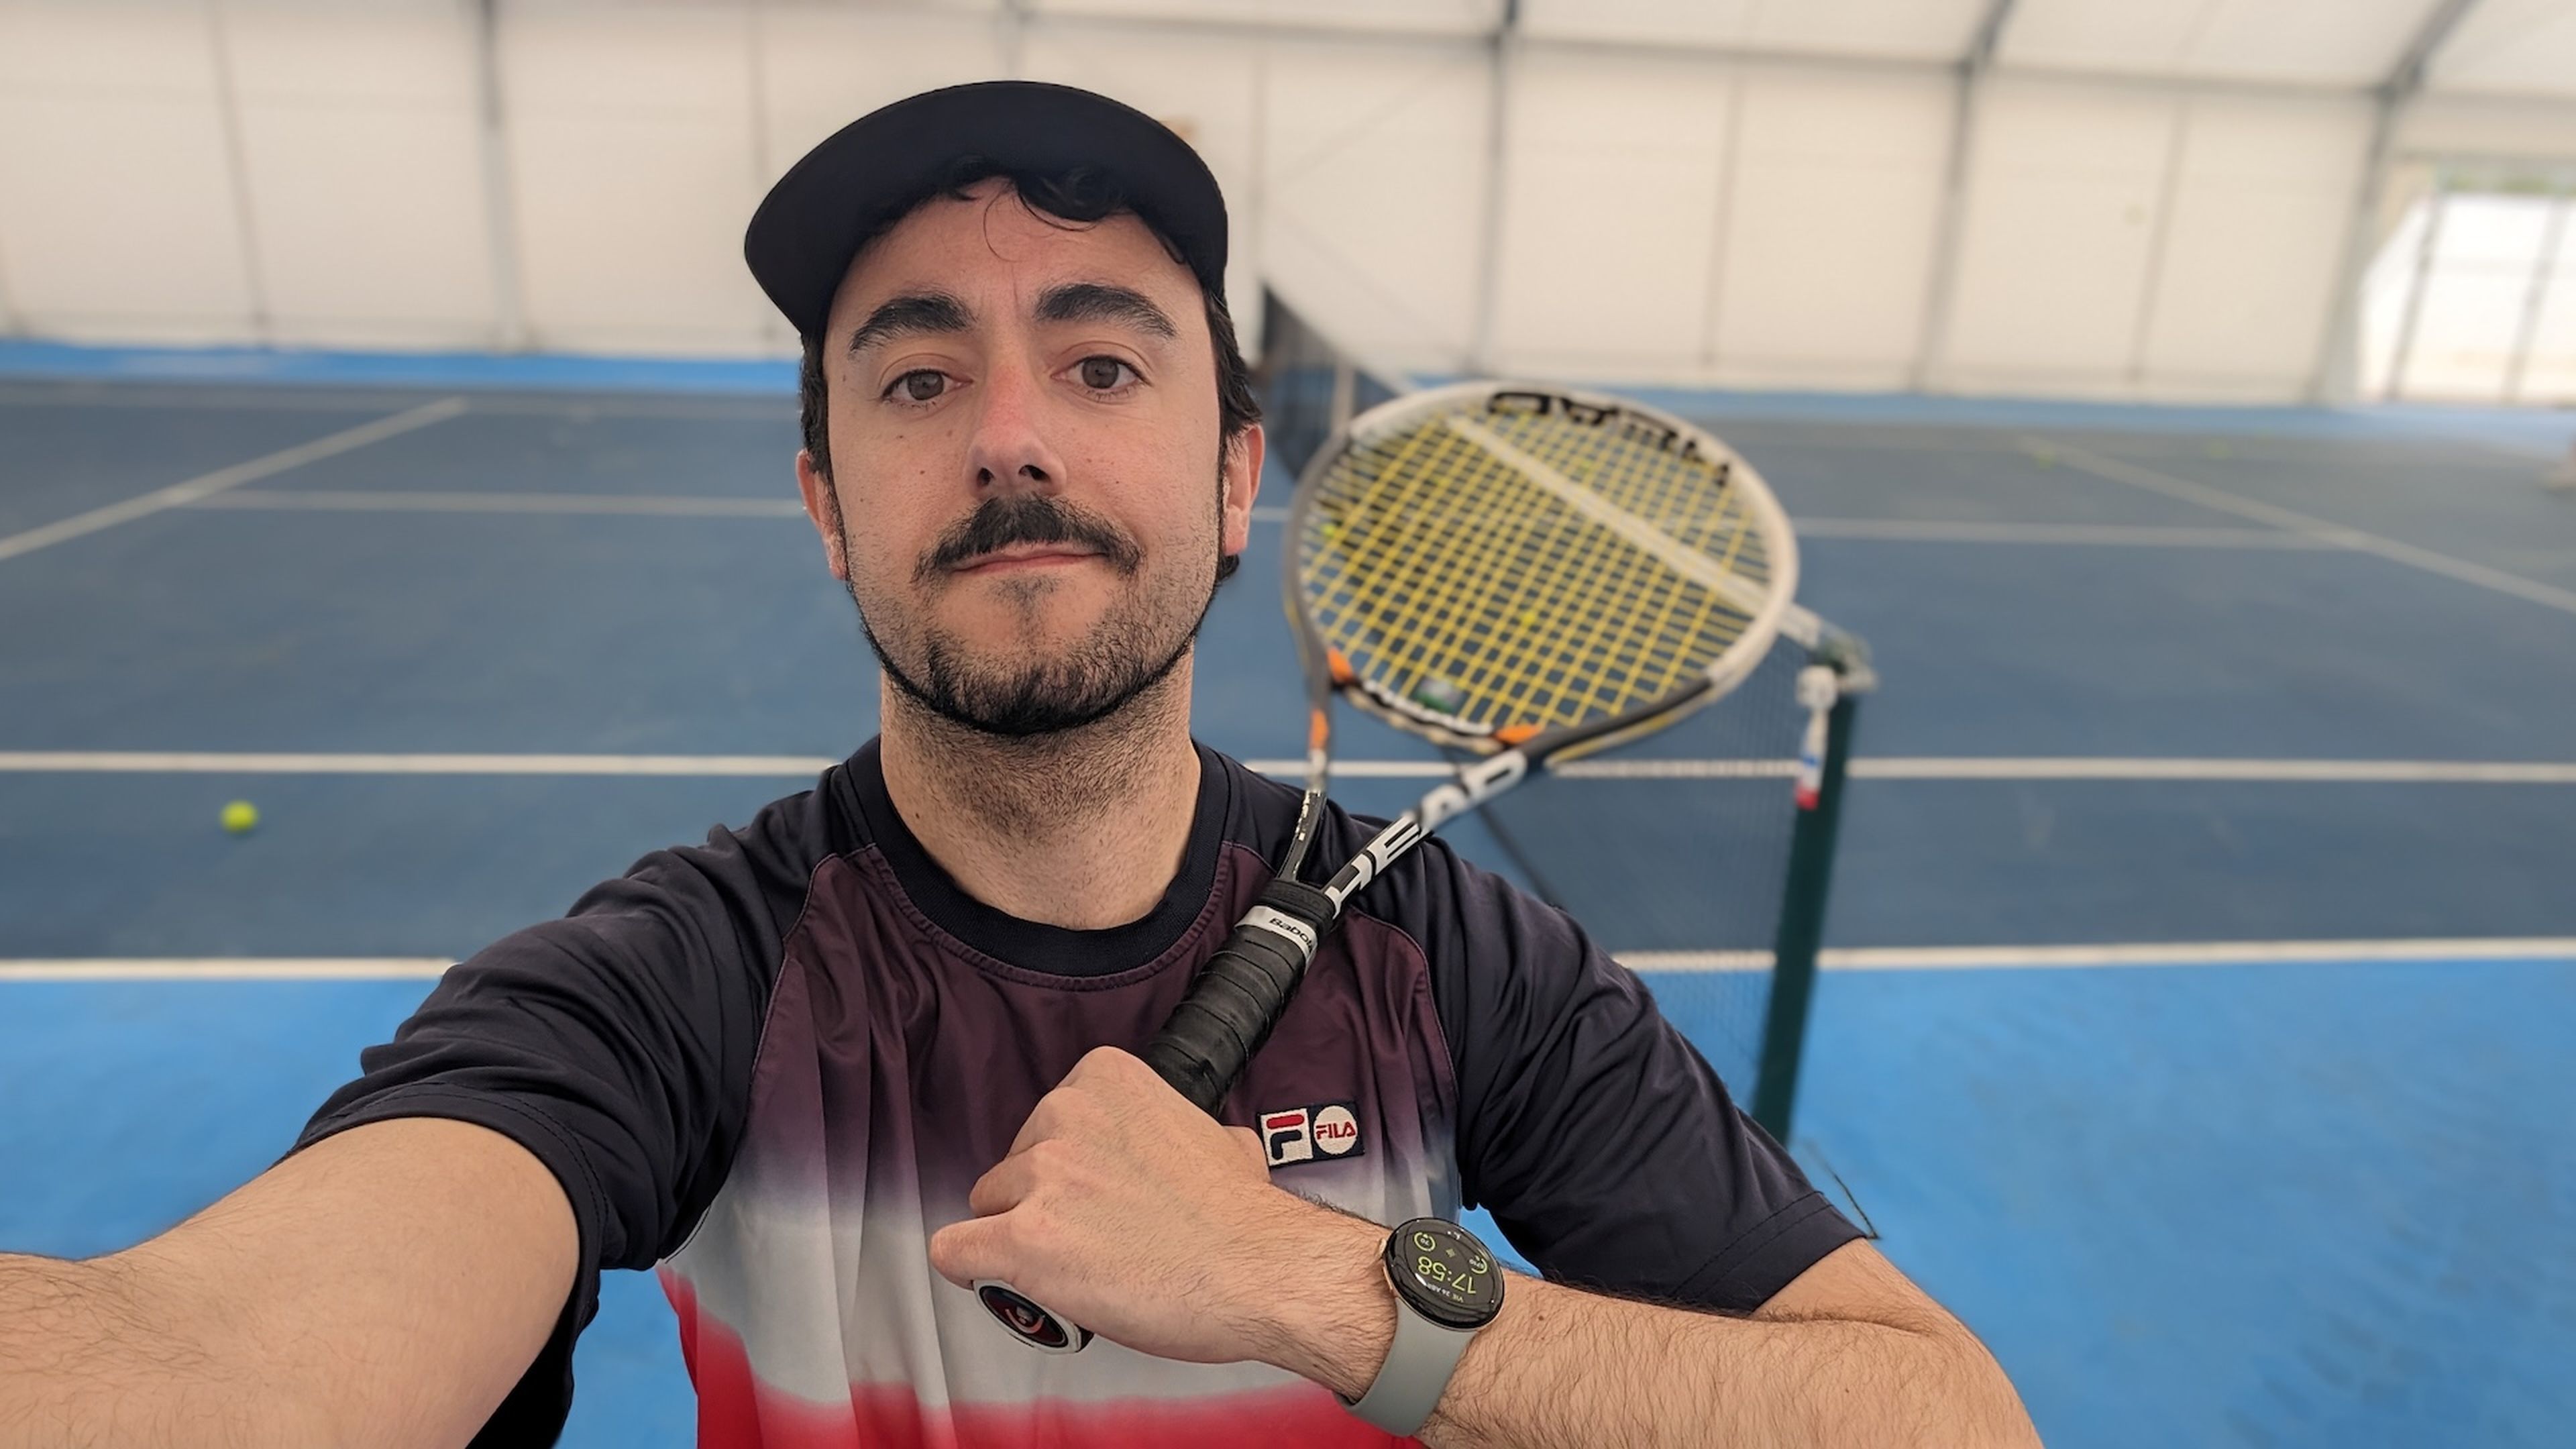 Yo, haciendo deporte (tenis) con un reloj Google Pixel Watch 2.